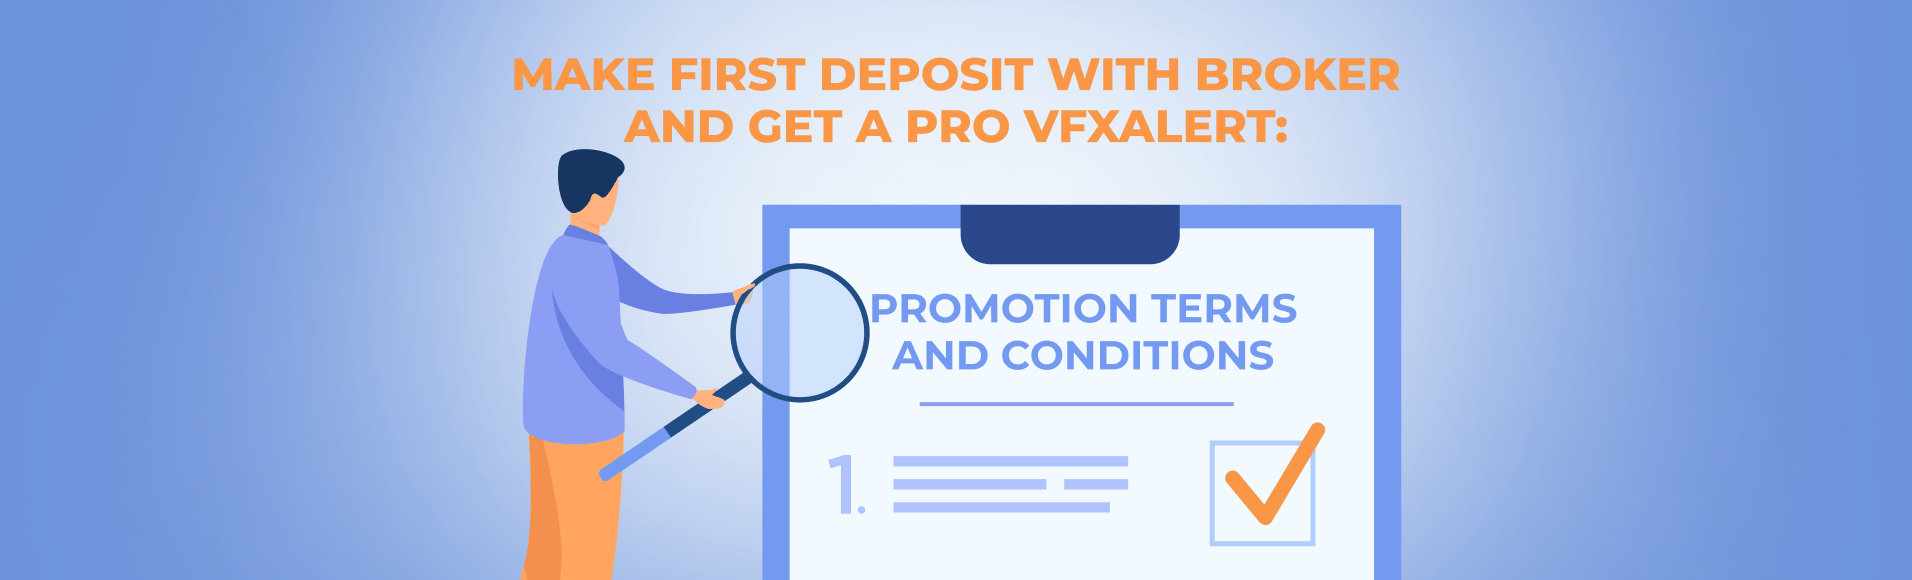 Lakukan deposit pertama dengan broker dan Dapatkan PRO vfxAlert: Syarat dan Ketentuan Promosi.